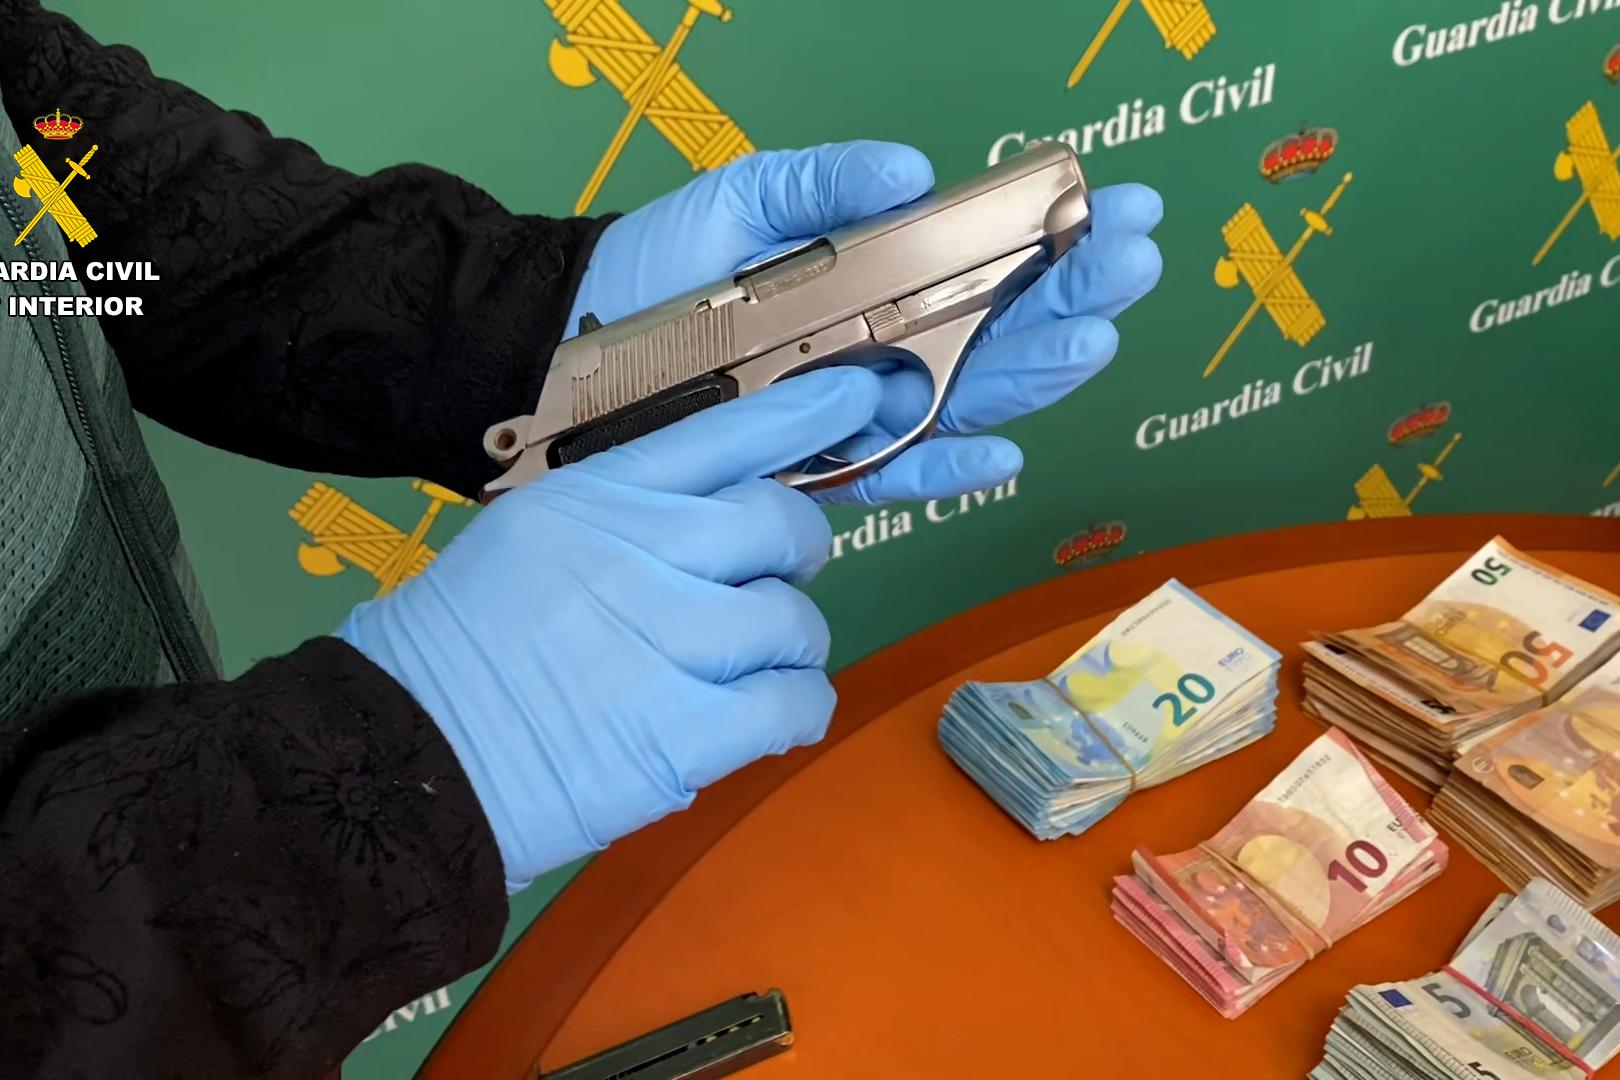 Imagen de una de las armas cortas y dinero incautados durante la operación